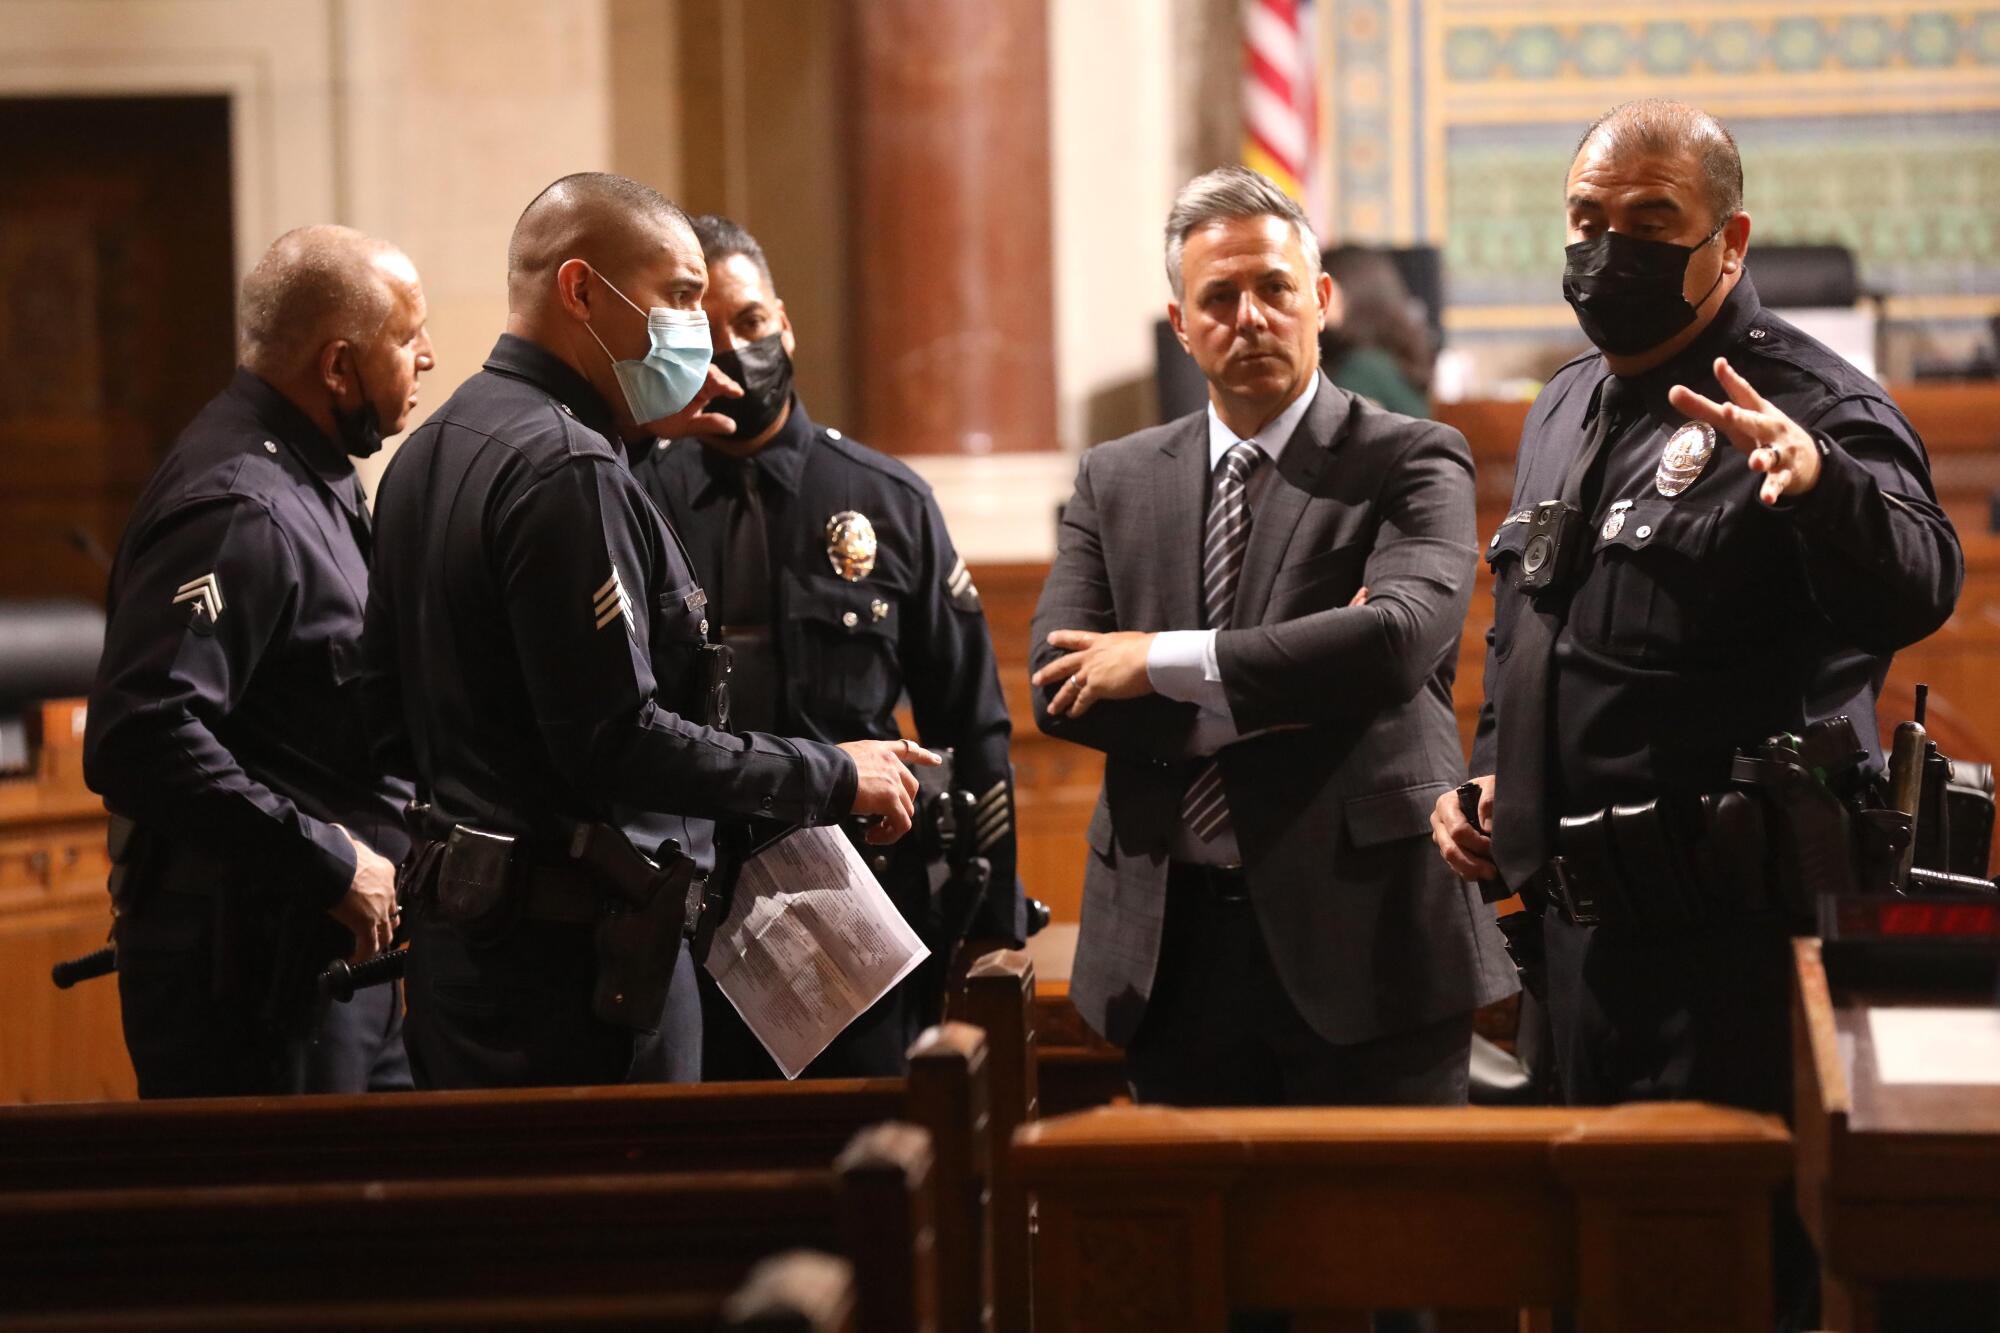 Los Angeles City Councilman Joe Buscaino confers with police